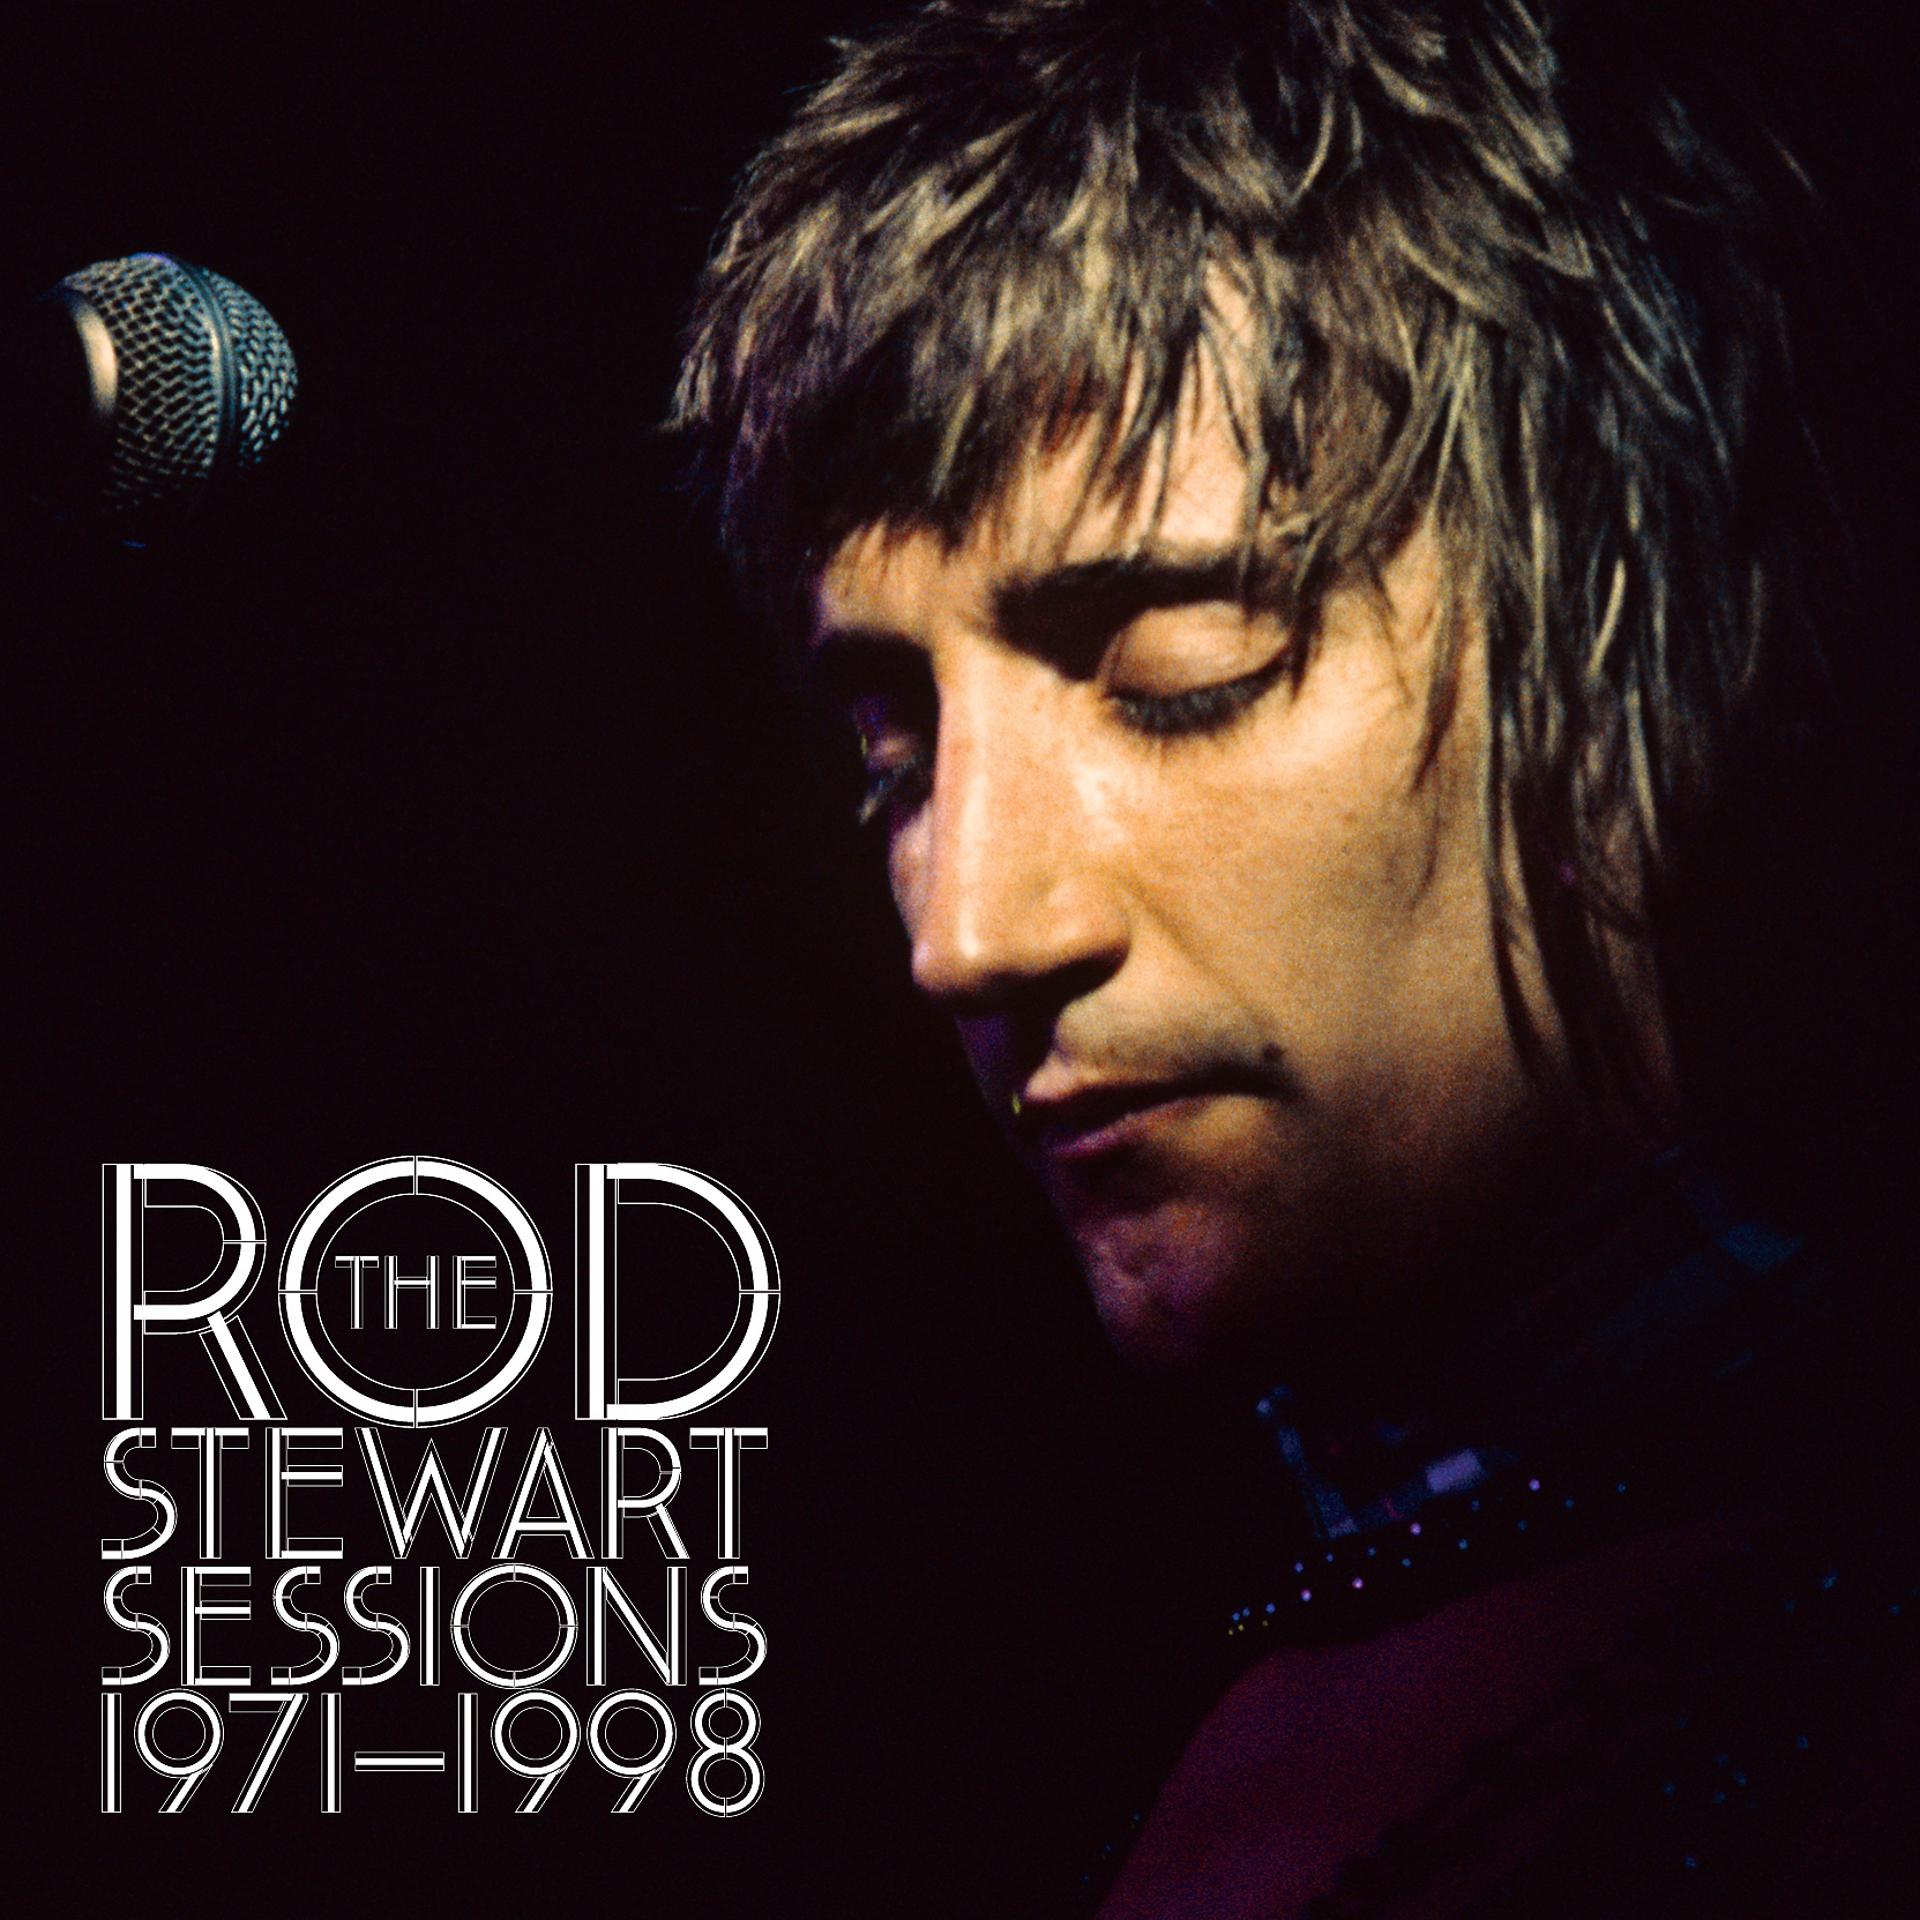 Род стюарт лучшие песни. Rod Stewart. The Rod Stewart sessions 1971-1998. Rod Stewart сессия. Rod Stewart 1971.